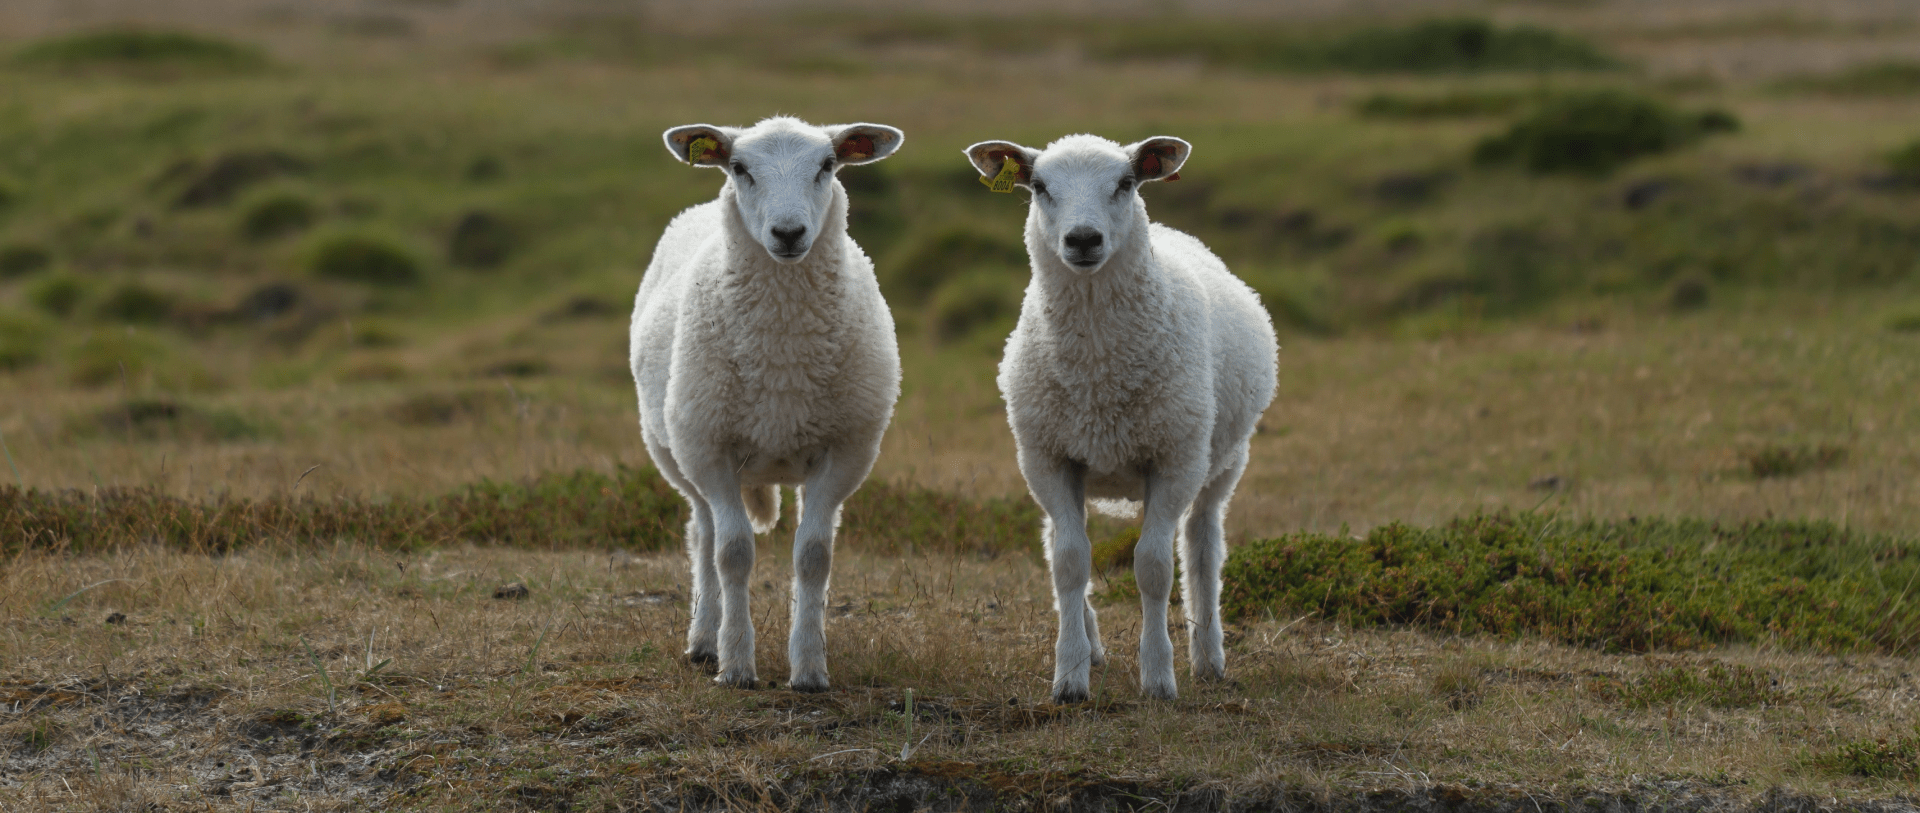 Zwei Schafe, die sinnbildlich für Duplicate Content stehen. Anleitung xeit